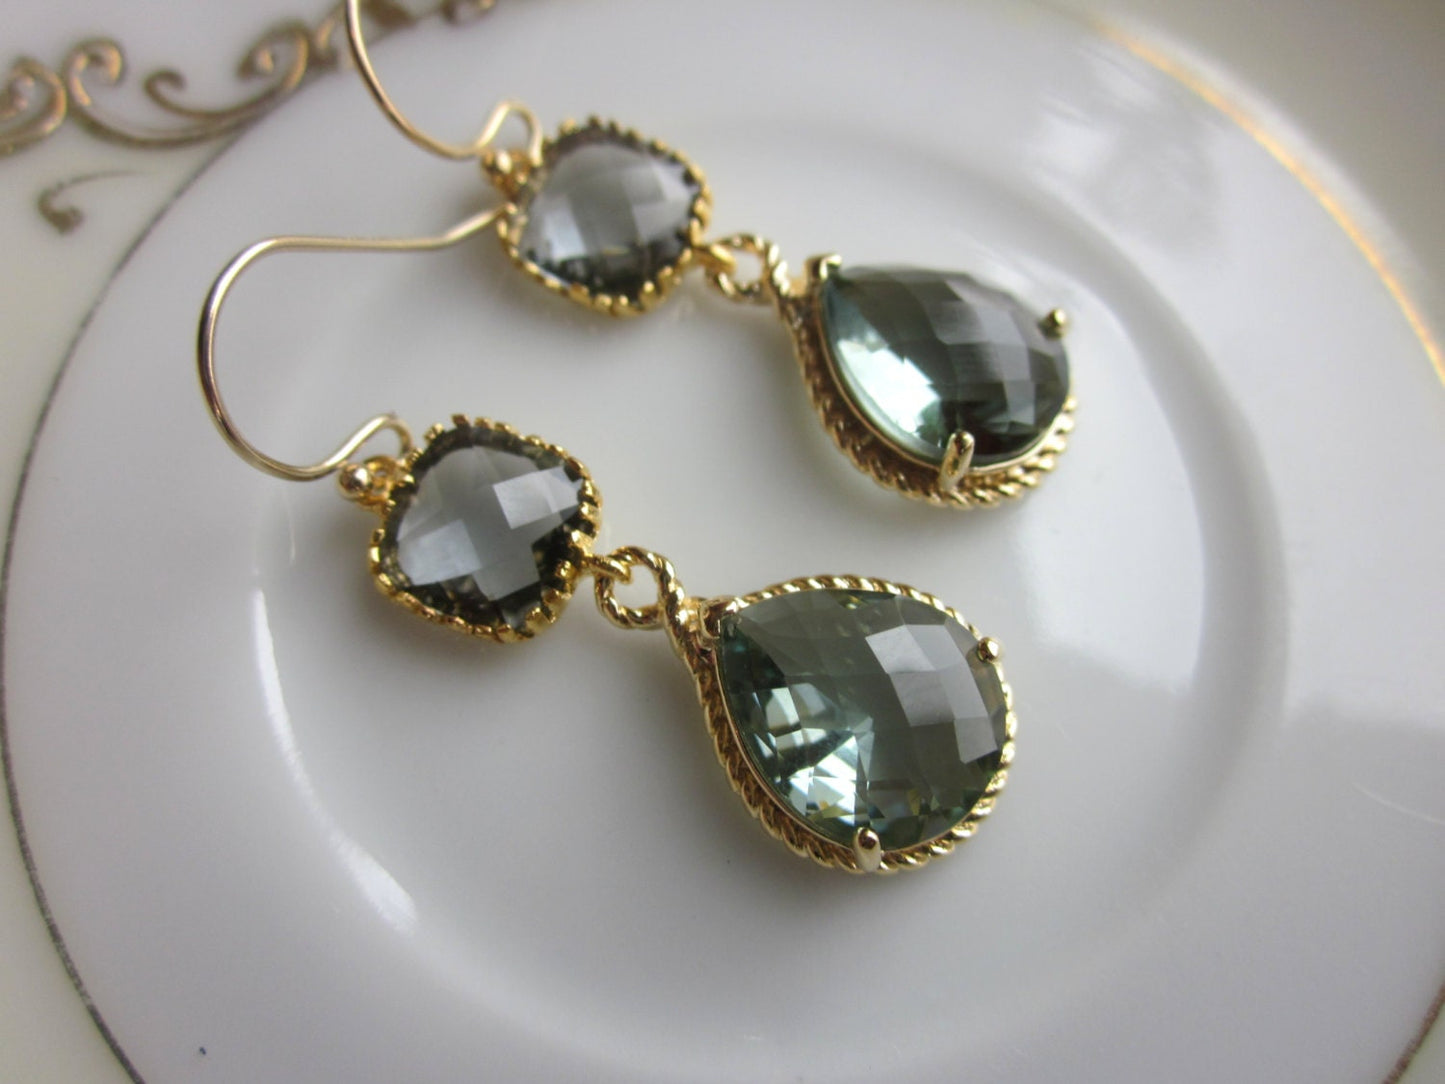 Charcoal Gray Earrings Gold Earrings Teardrop Glass Two Tier - Bridesmaid Earrings Wedding Earrings Wedding Jewelry